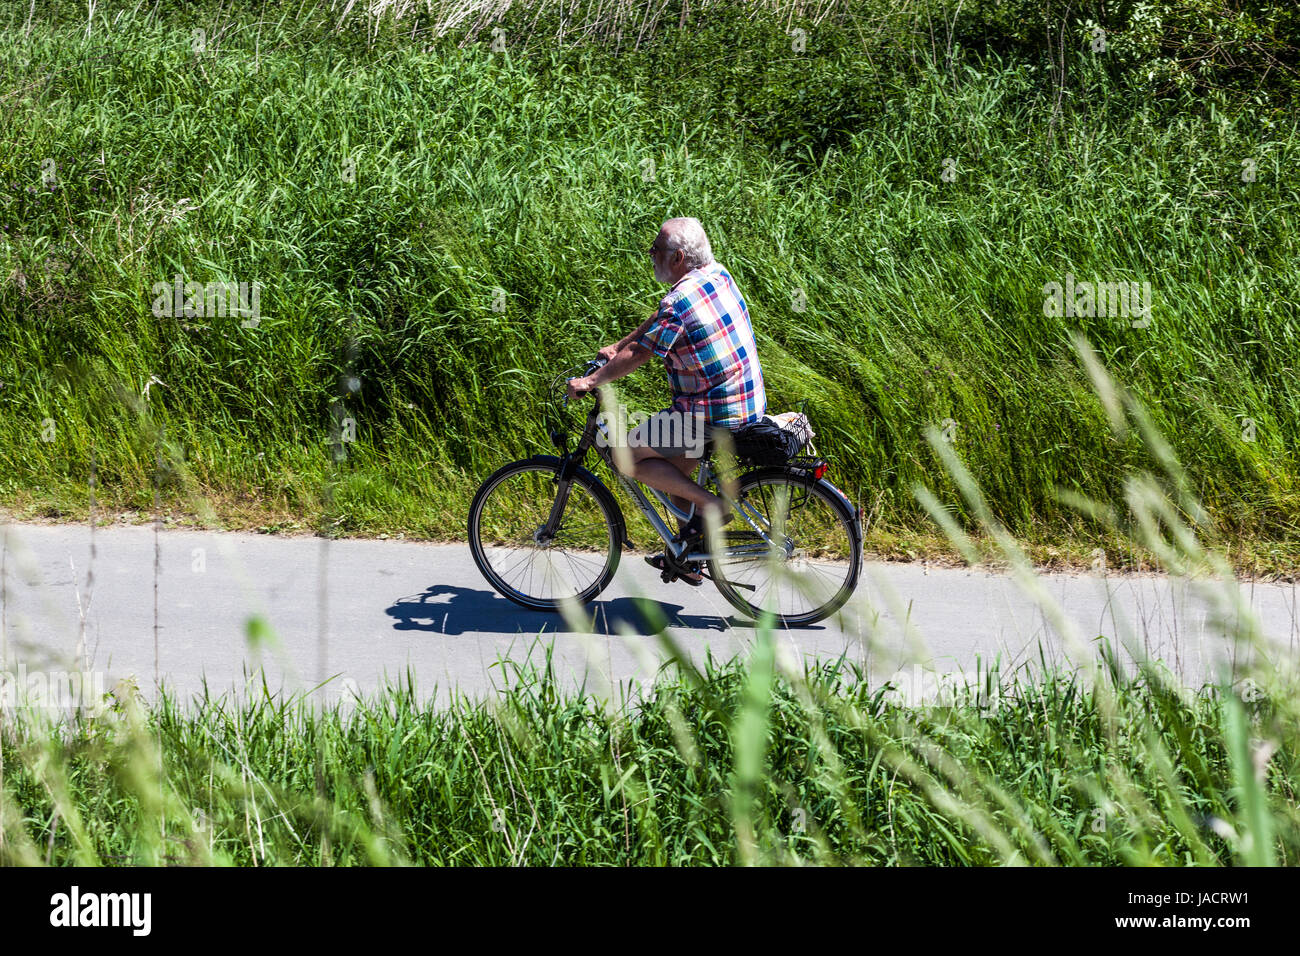 Deutscher Radfahrer, ein Mann auf dem Fahrrad Sächsische Schweiz Region, Bad Schandau, Sachsen, Deutschland, Europa Senior riding bike Stockfoto